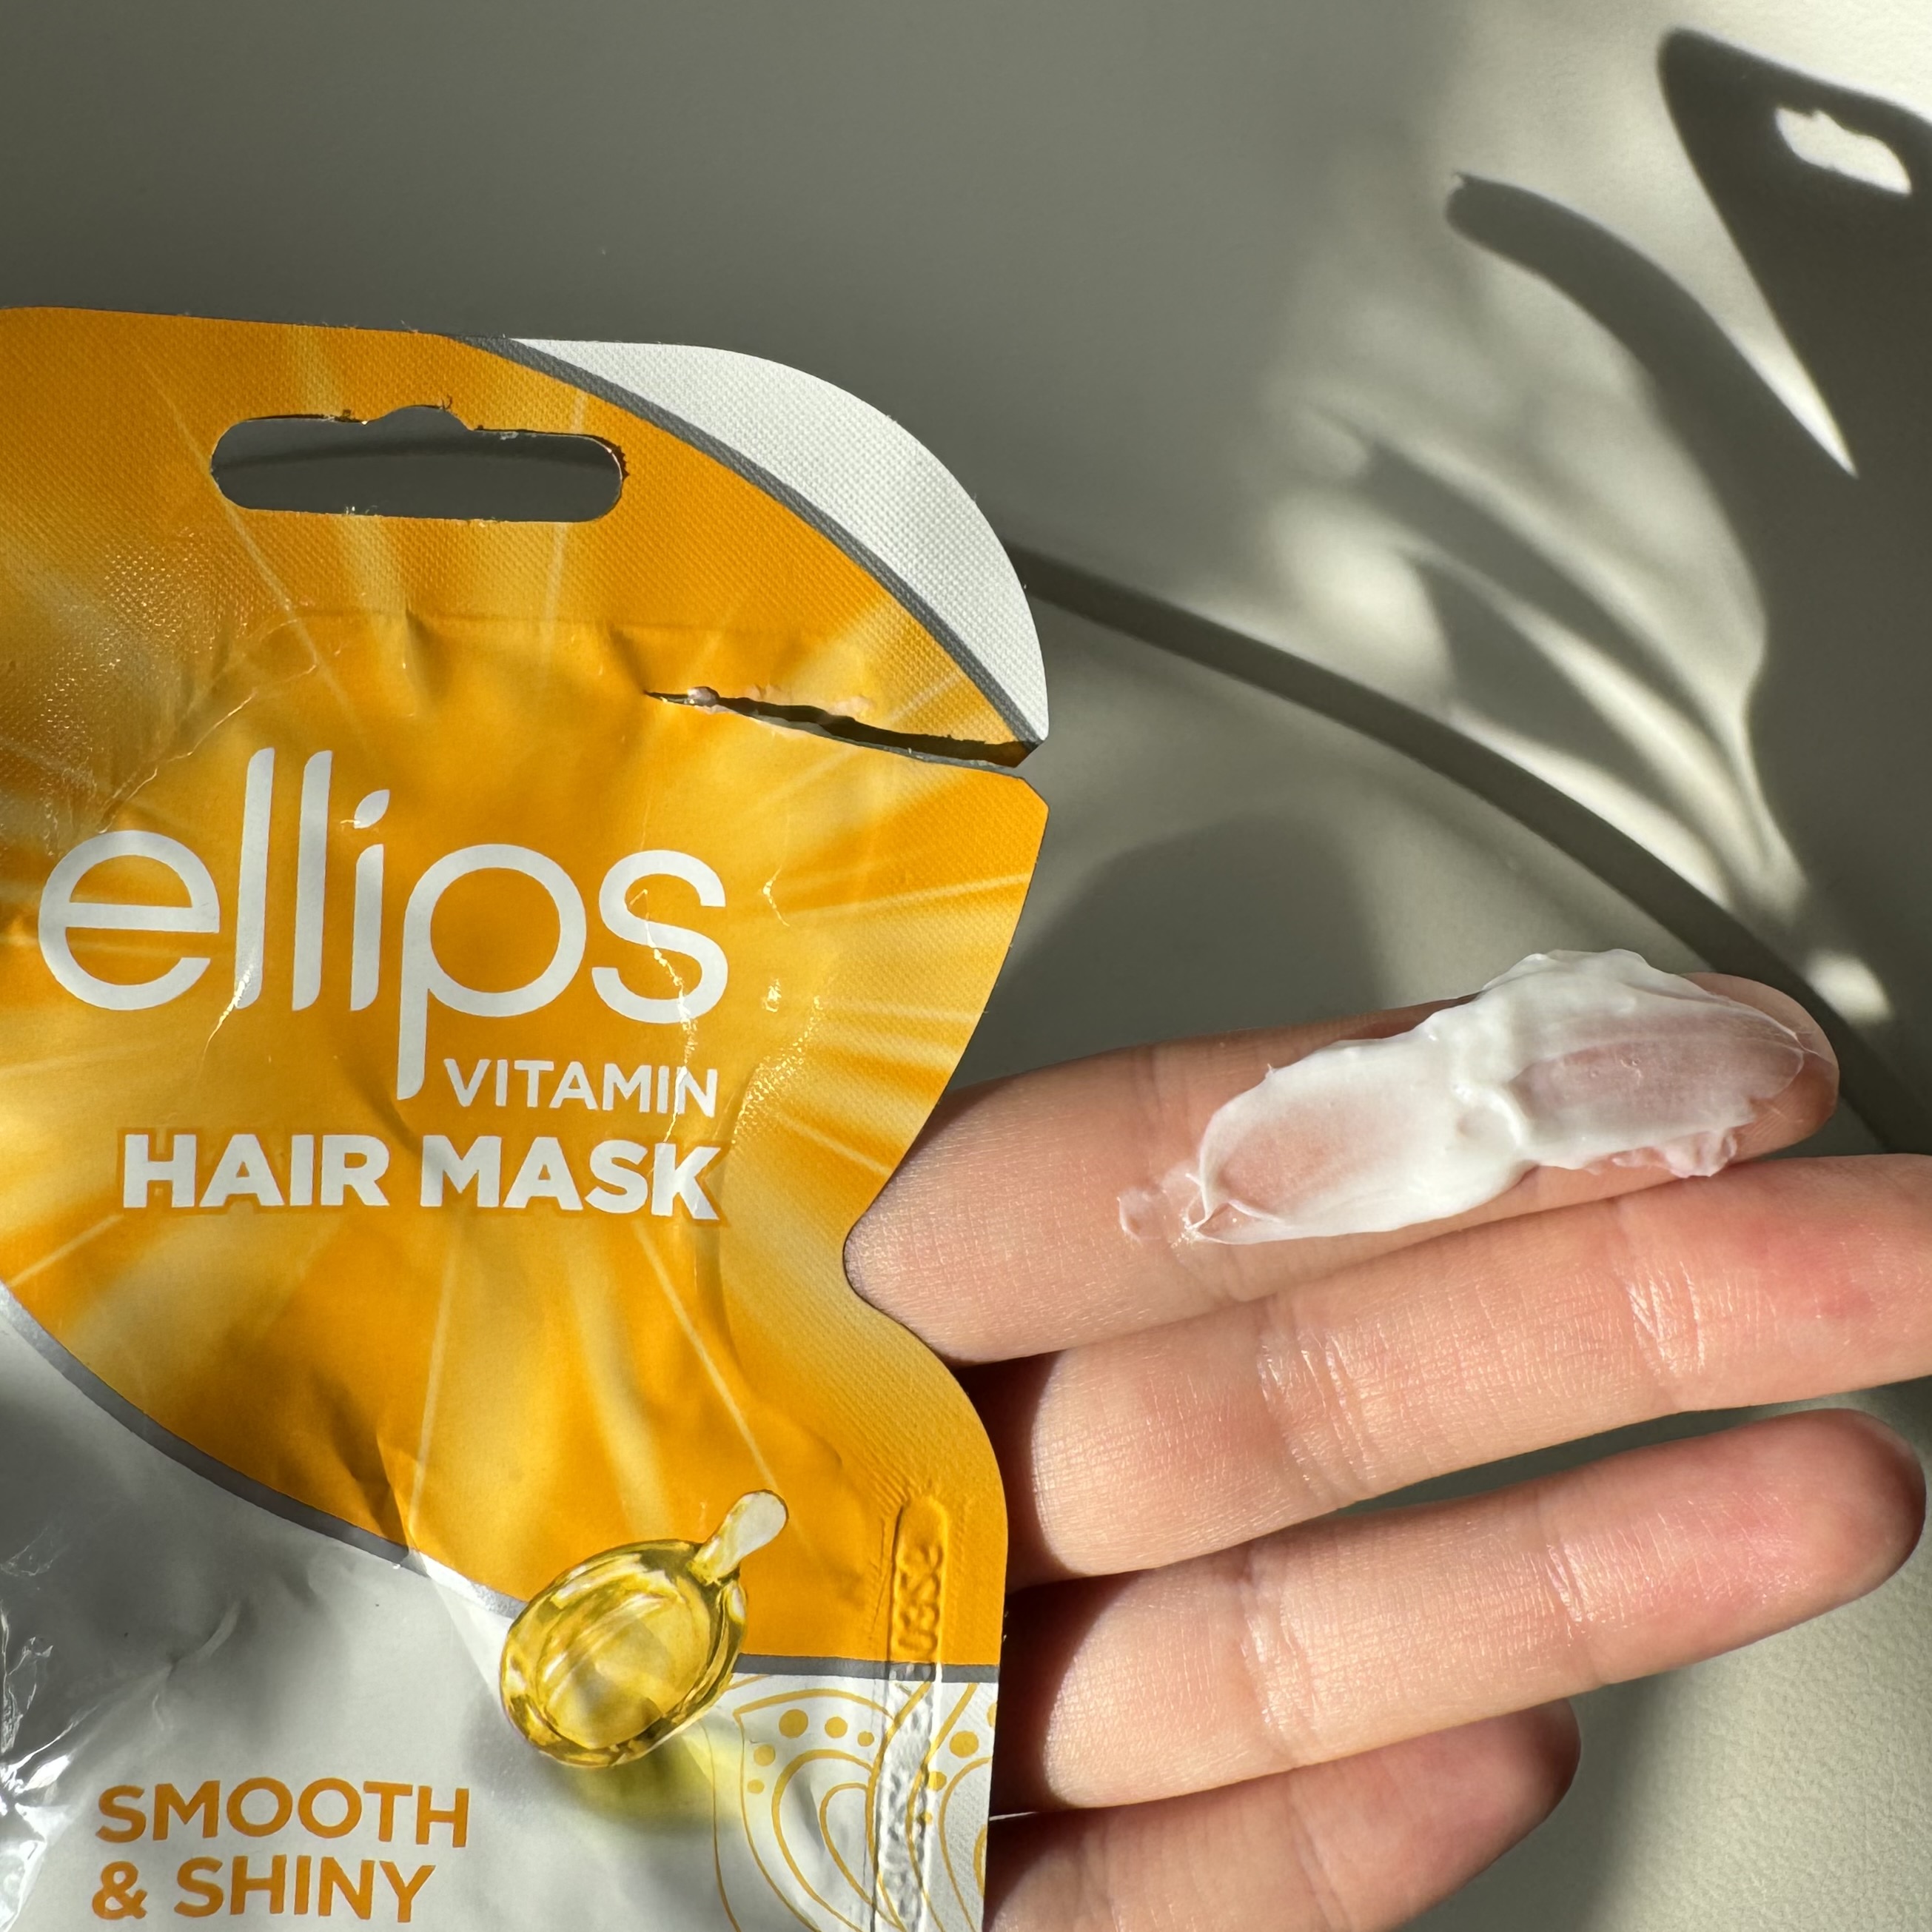 Ellips Vitamin Hair Mask